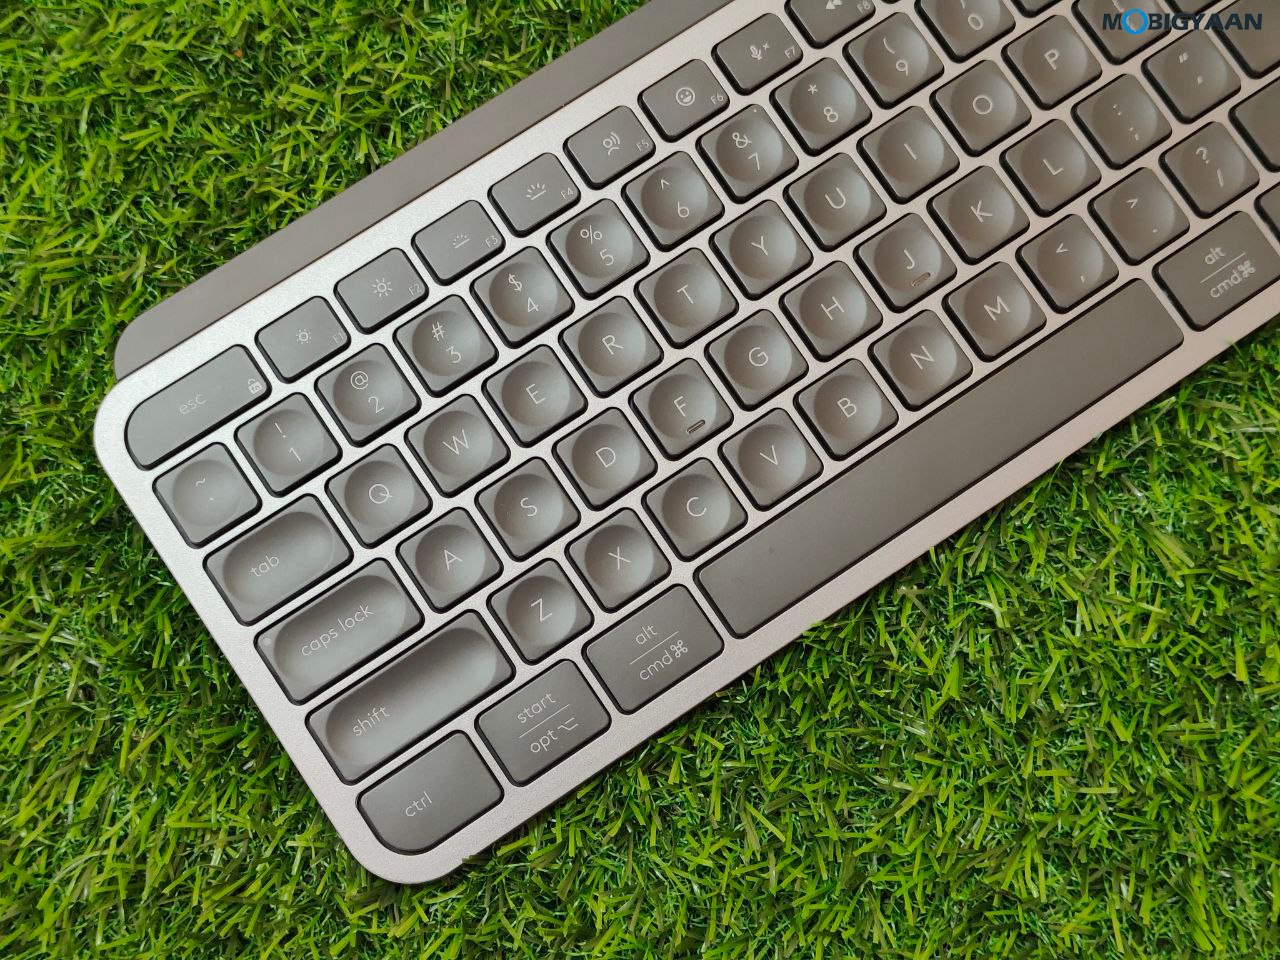 Logitech MX Keys S Review Wireless Keyboard Design Build Quality 18